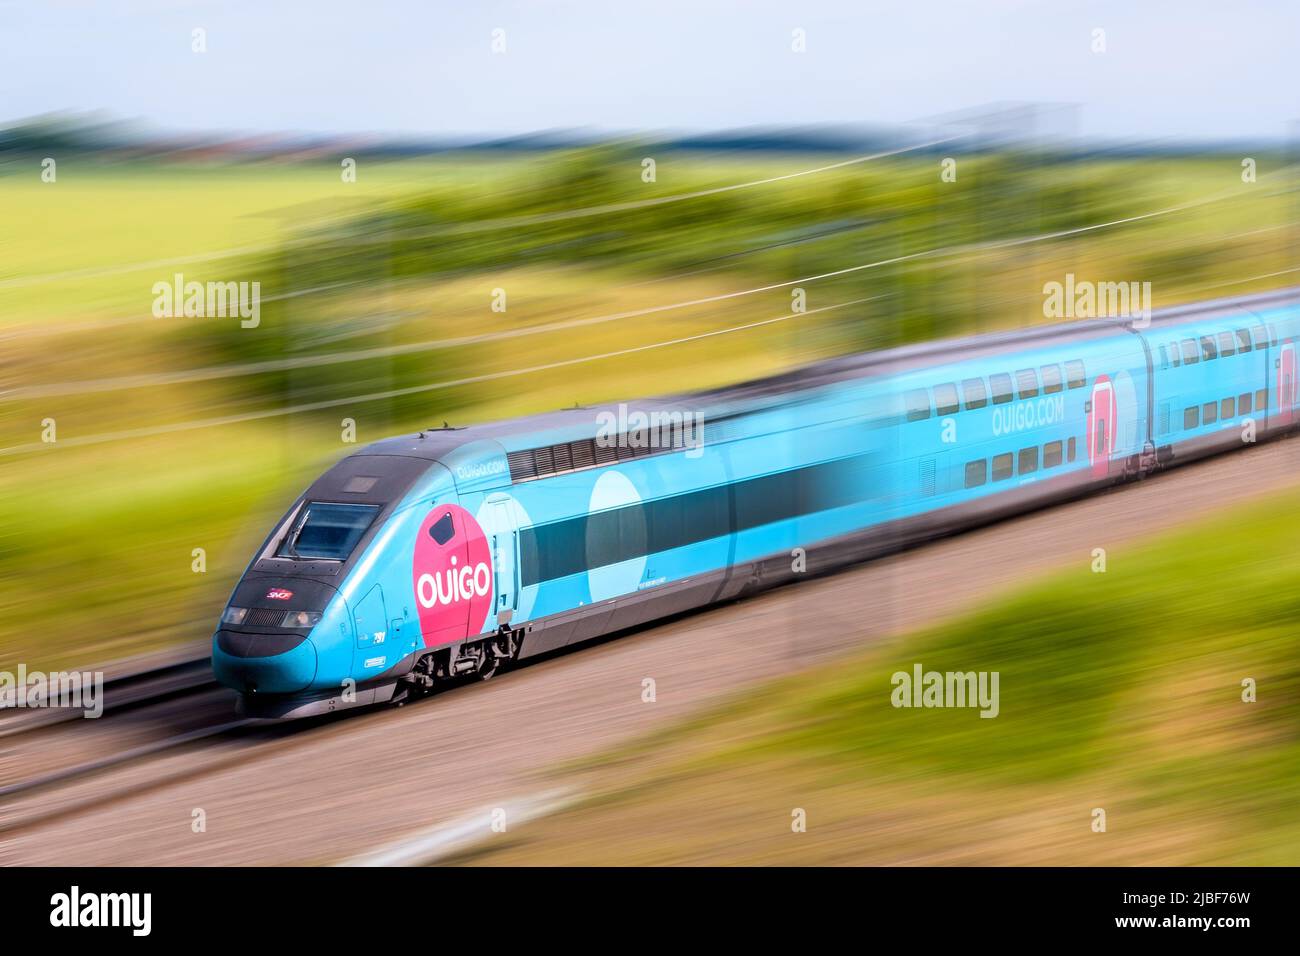 Un tren TGV Duplex Ouigo de alta velocidad de la compañía francesa de trenes SNCF está conduciendo a toda velocidad en el campo. Foto de stock